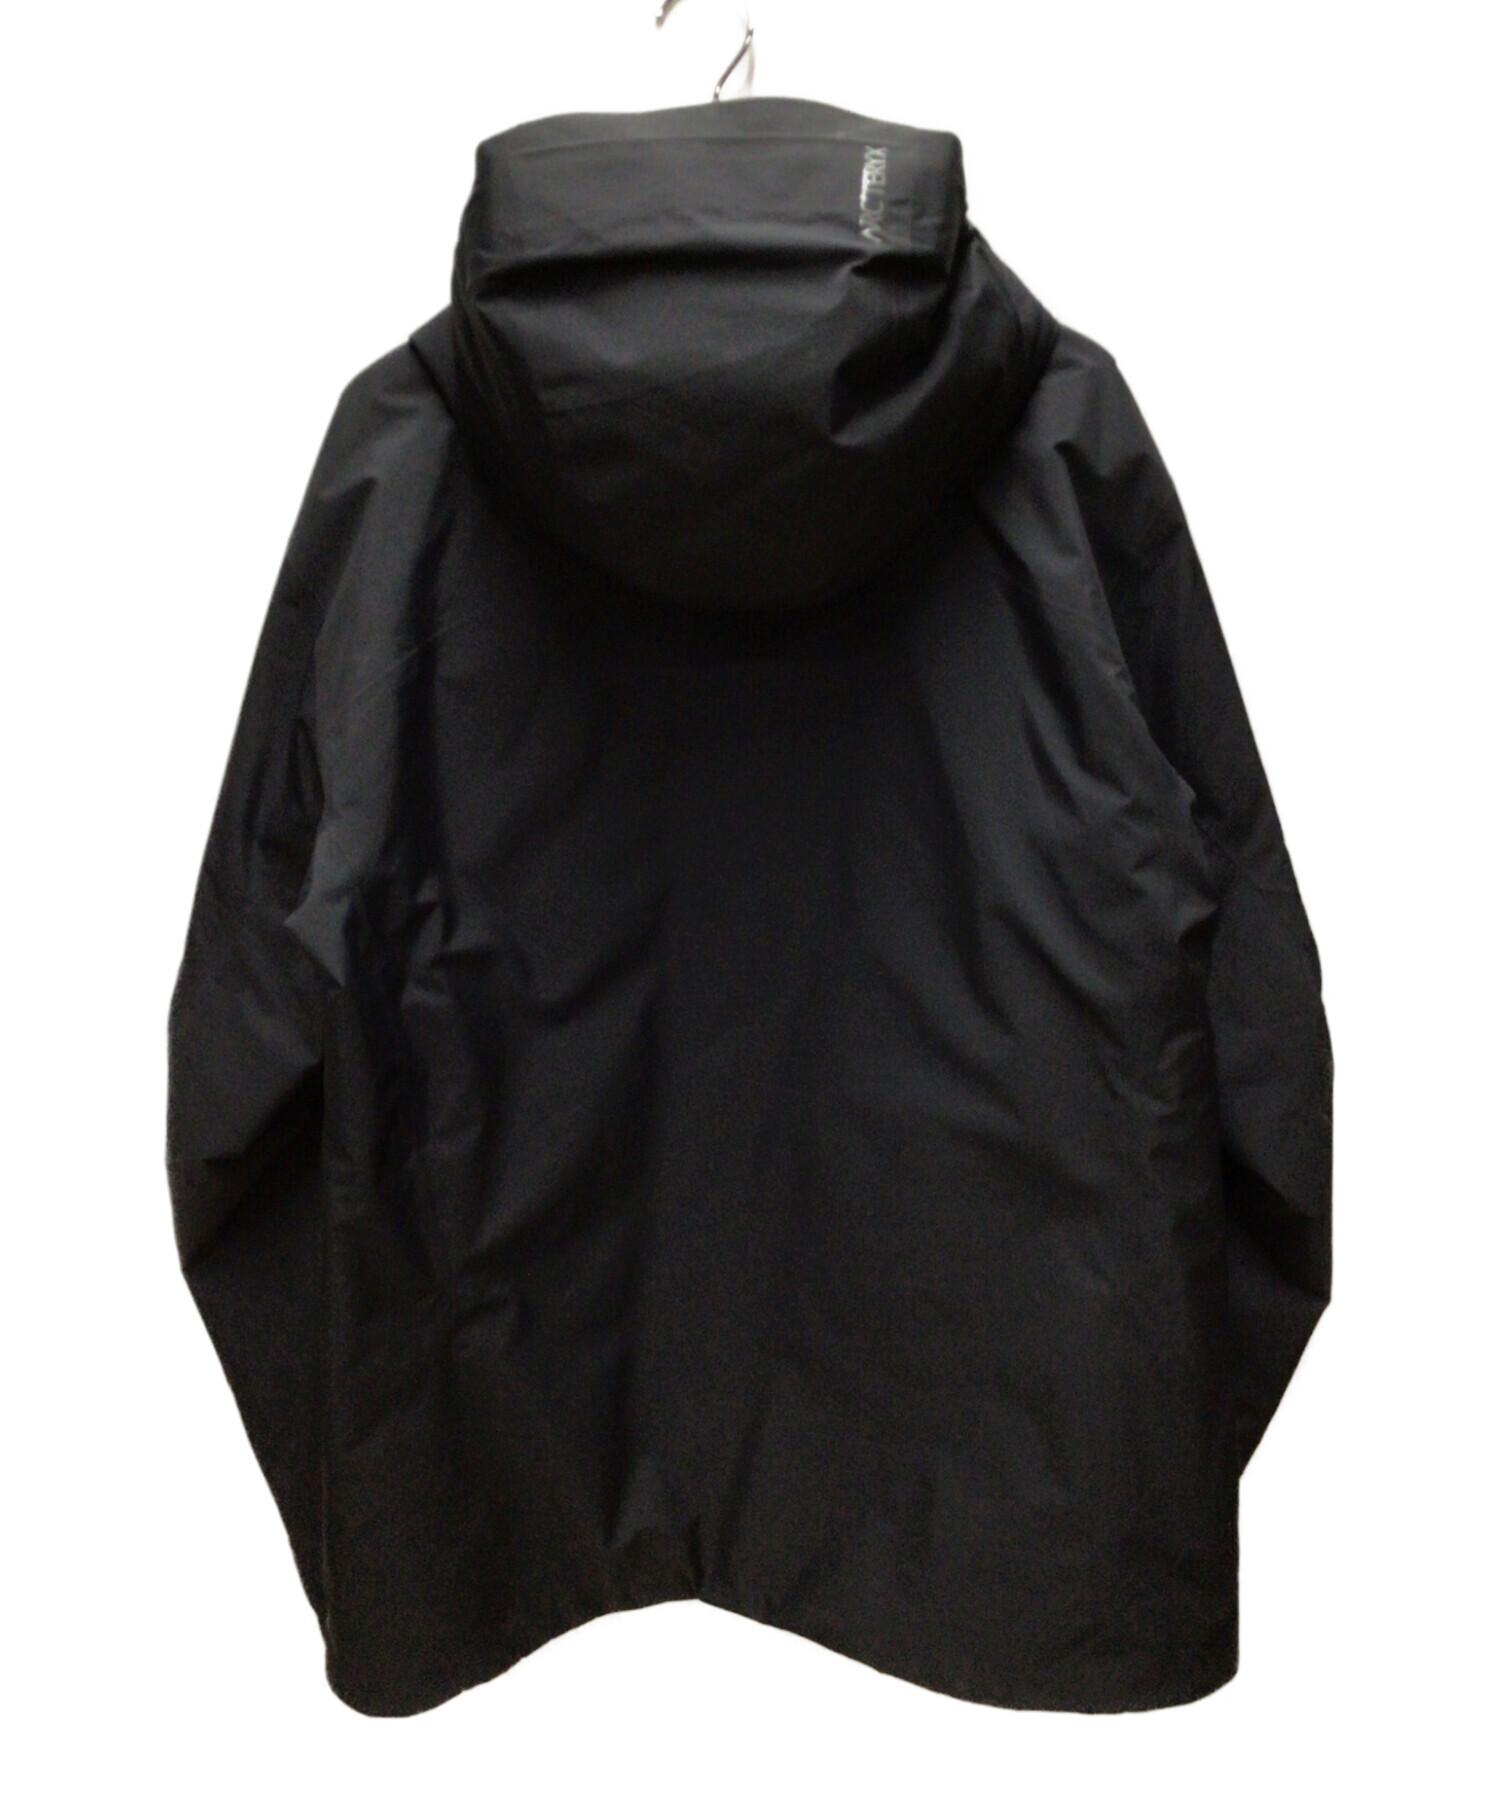 ARC'TERYX (アークテリクス) レイルインサレーテッドジャケット ブラック サイズ:L